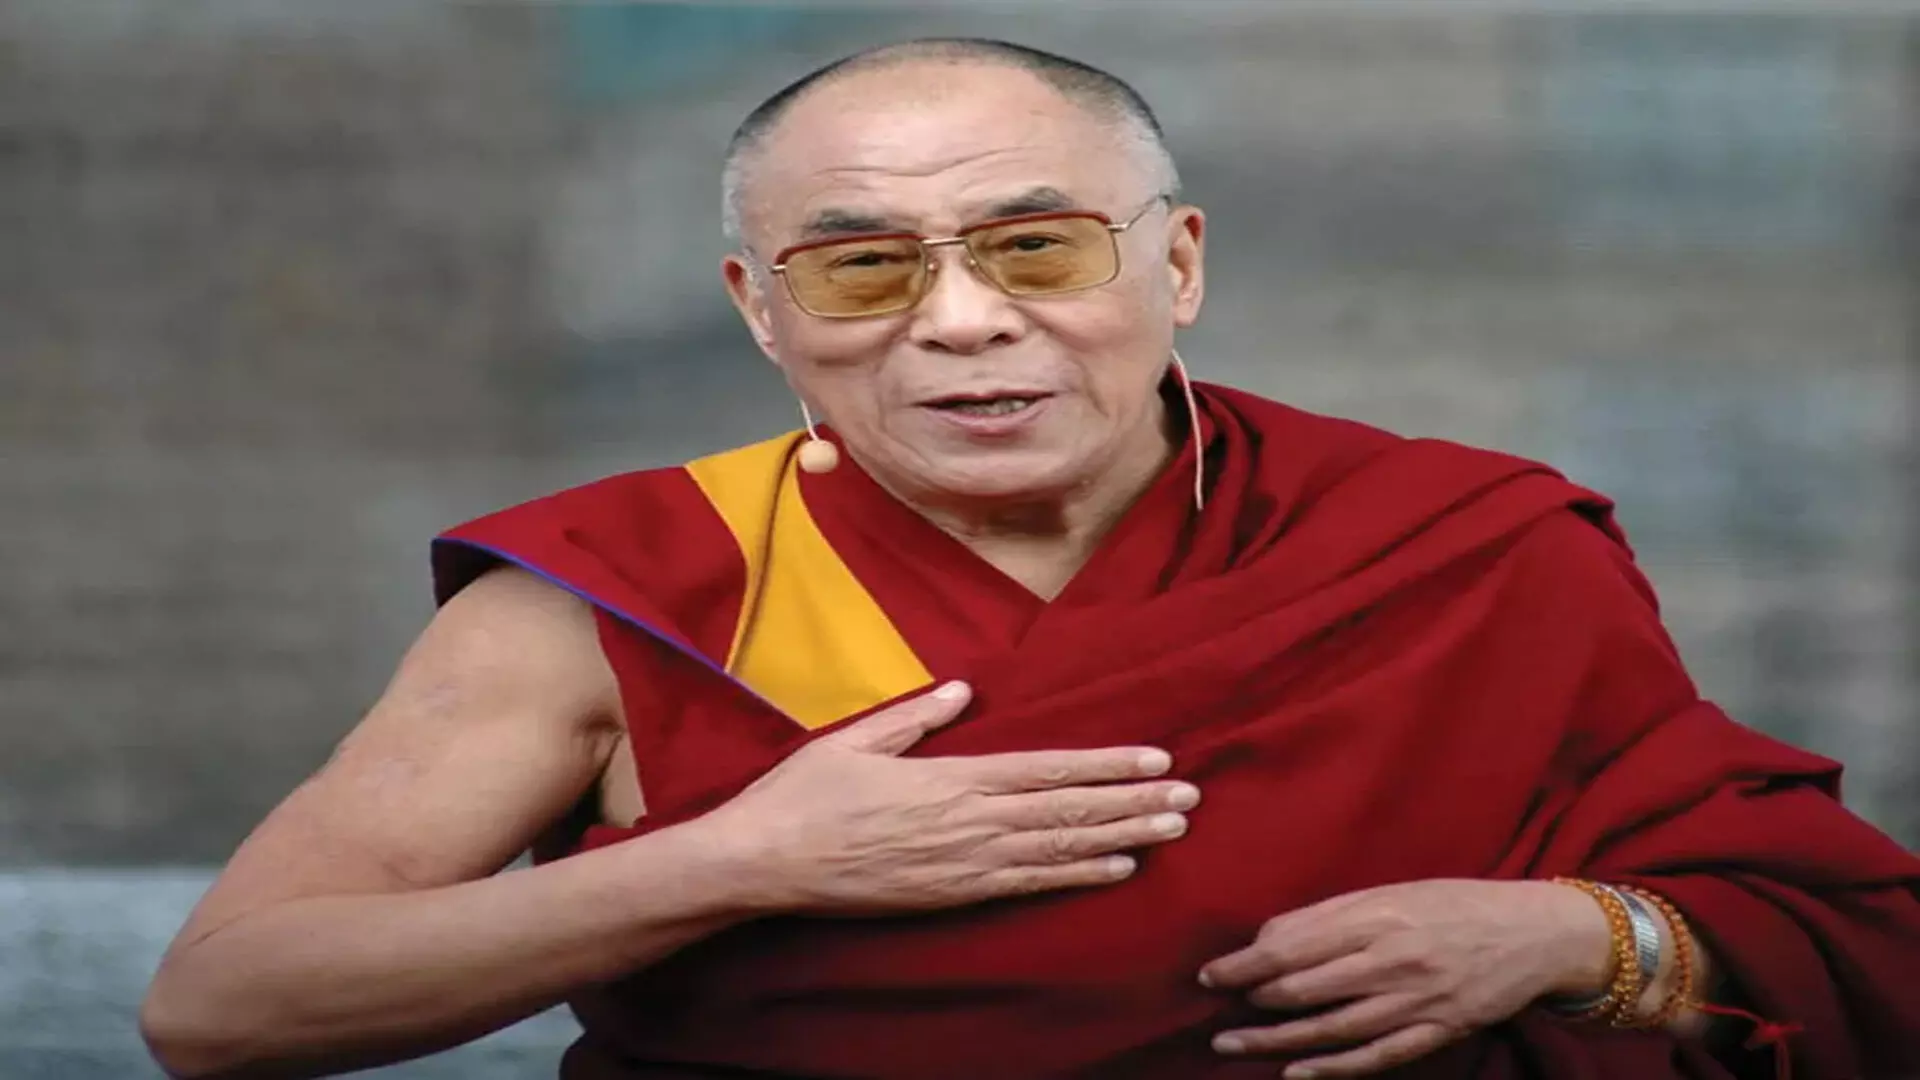 दलाई लामा ने तिब्बत की वैश्विक पहचान सुनिश्चित की है